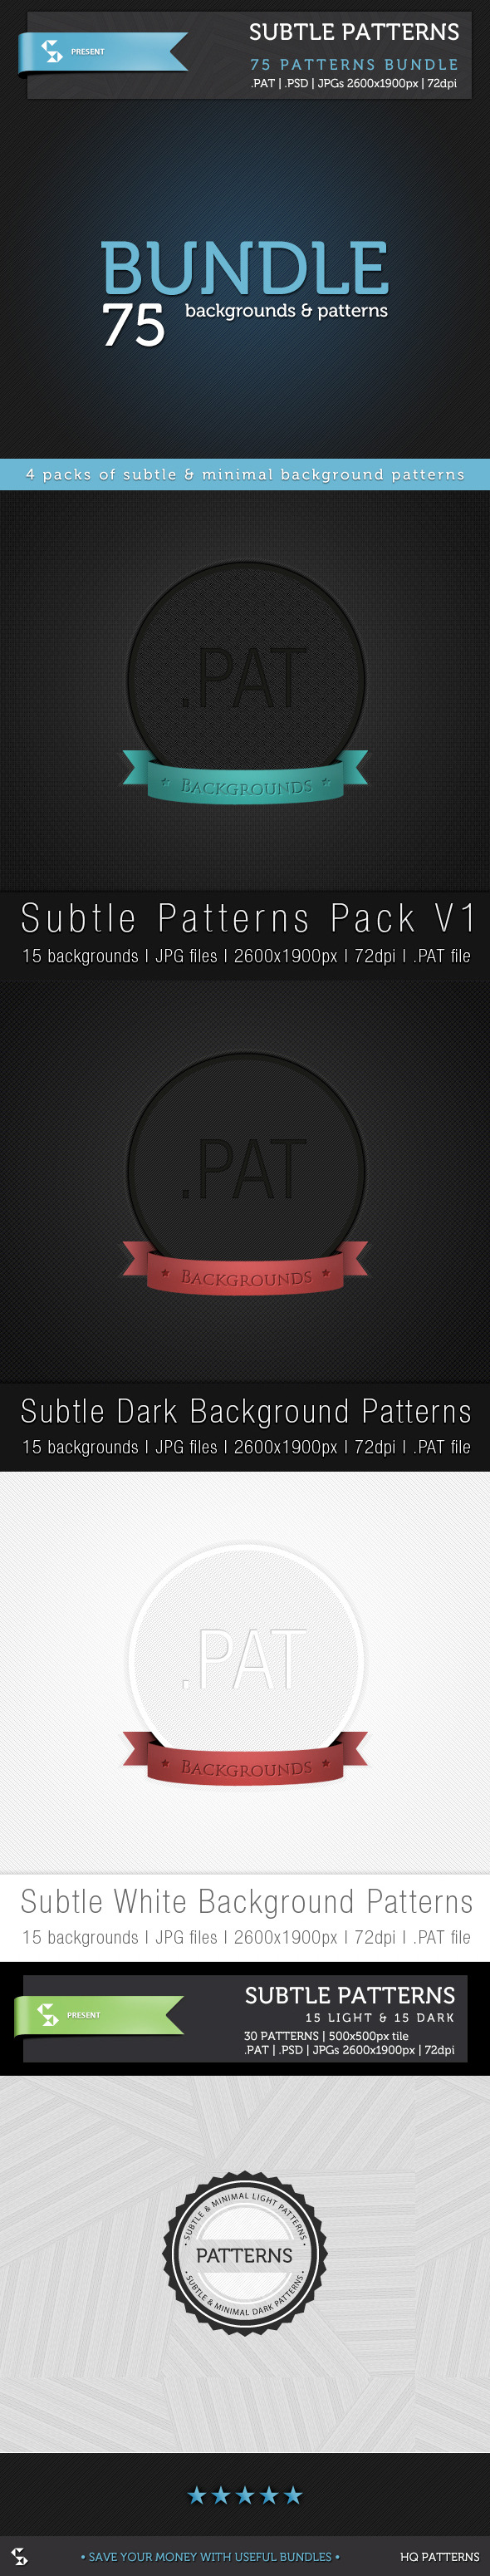 Subtle Background Patterns - Bundle